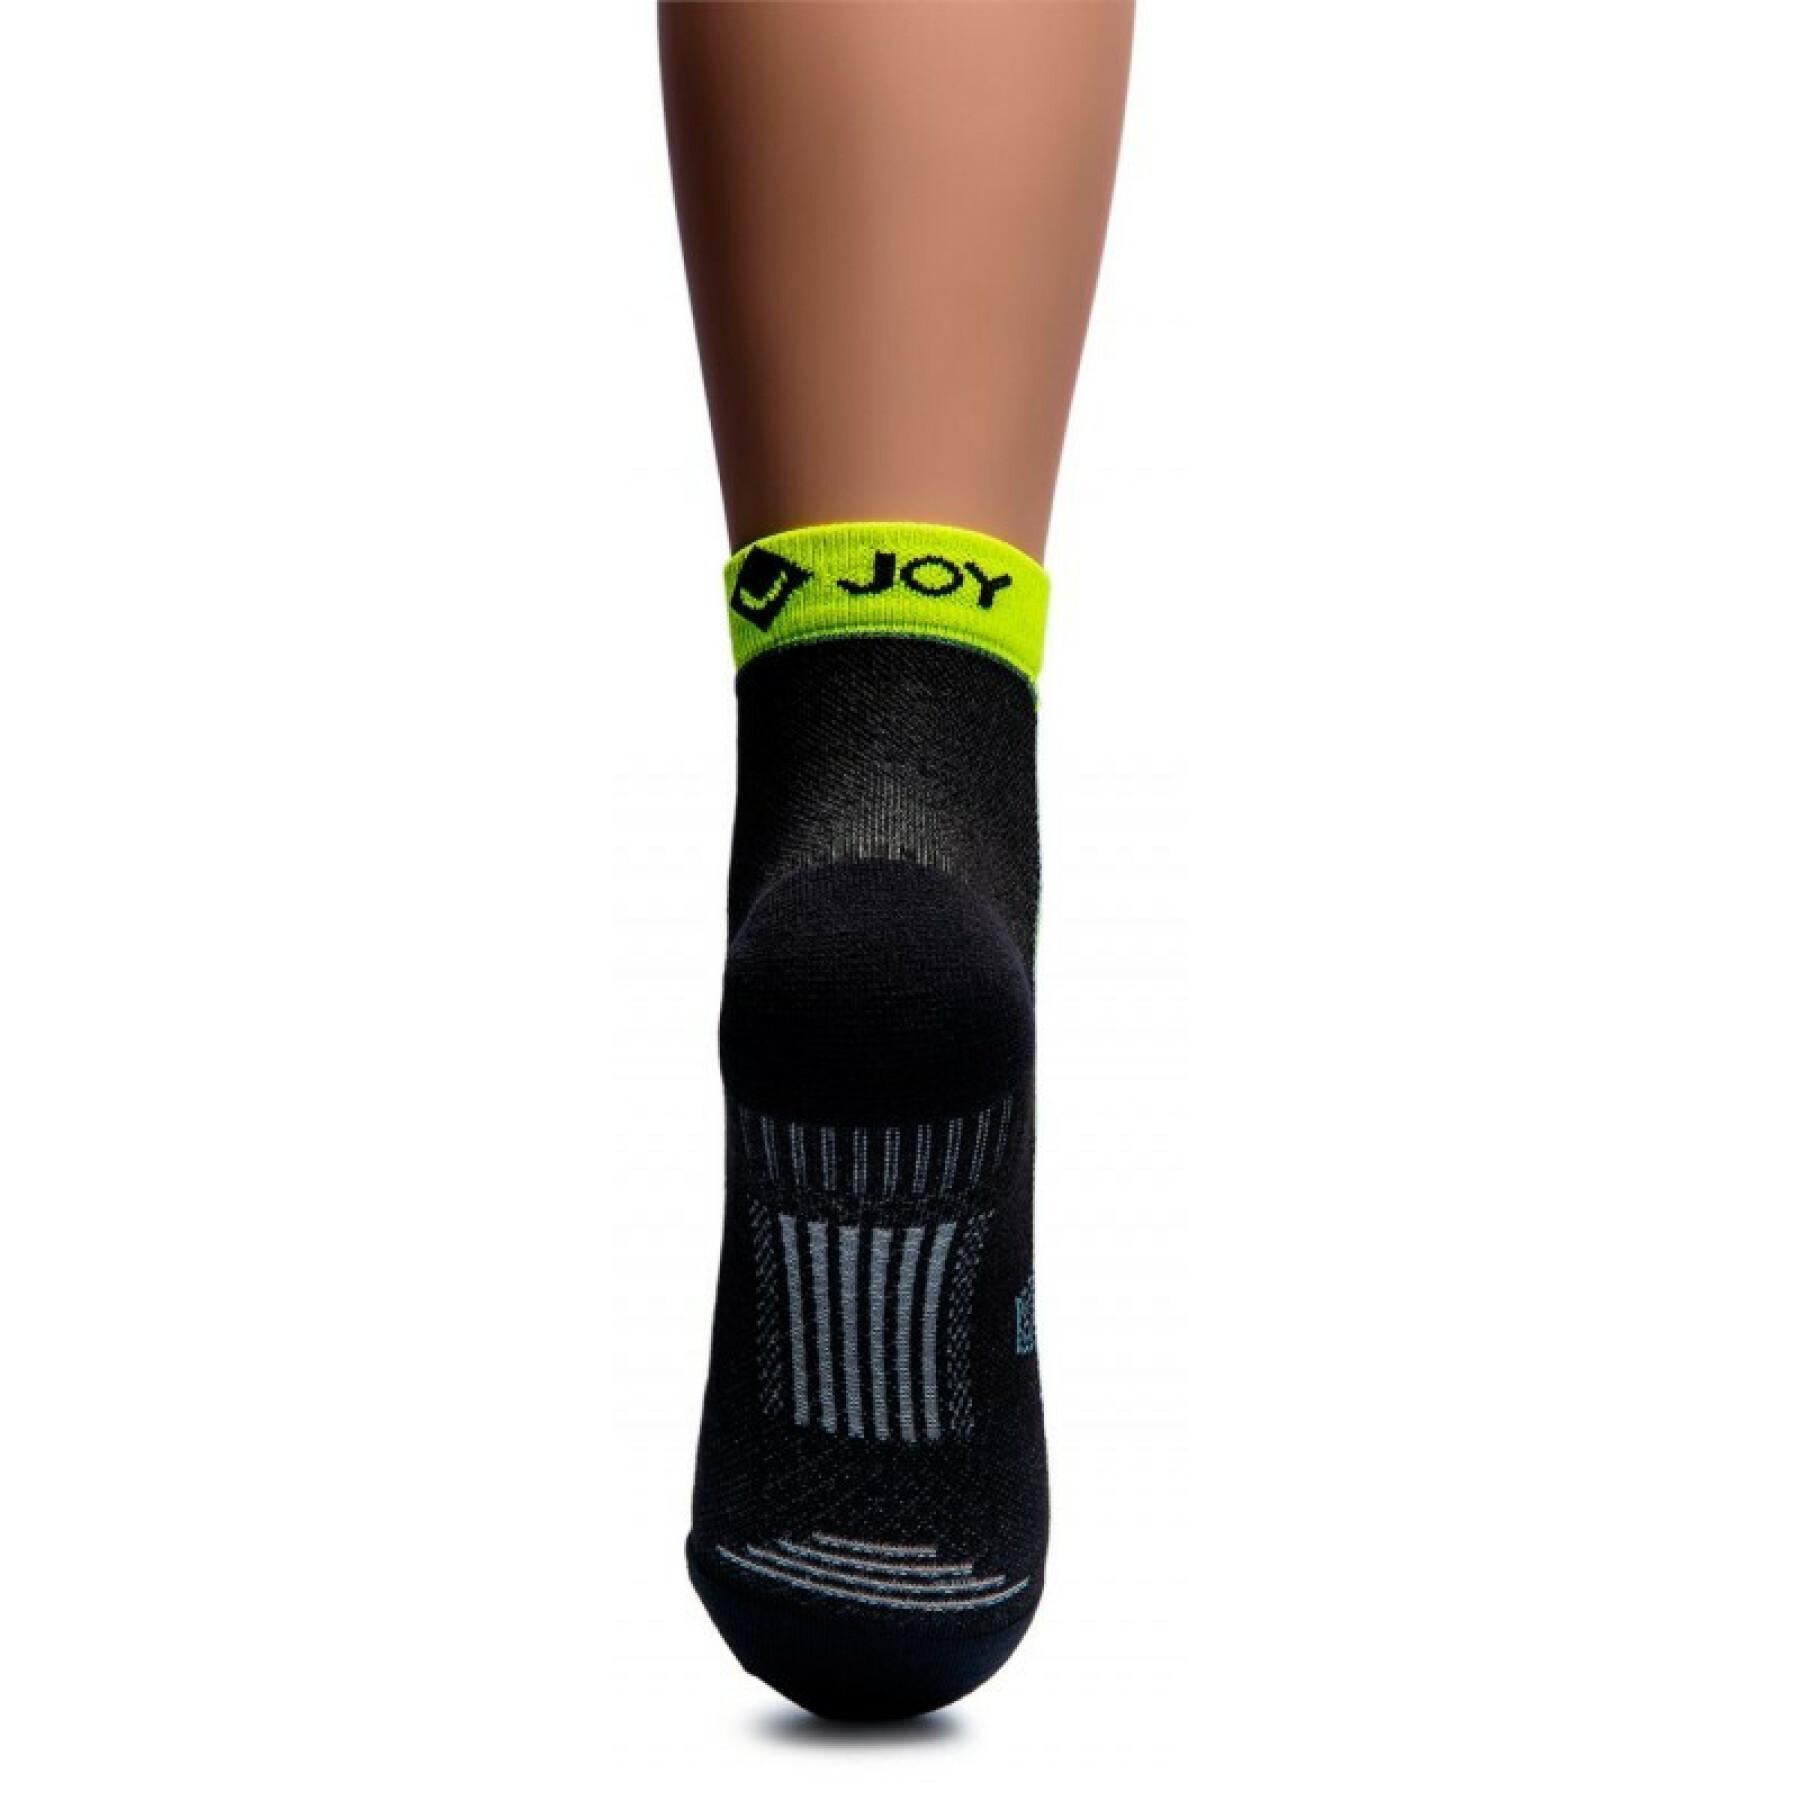 Ventilated socks Rywan Joy Sneakers